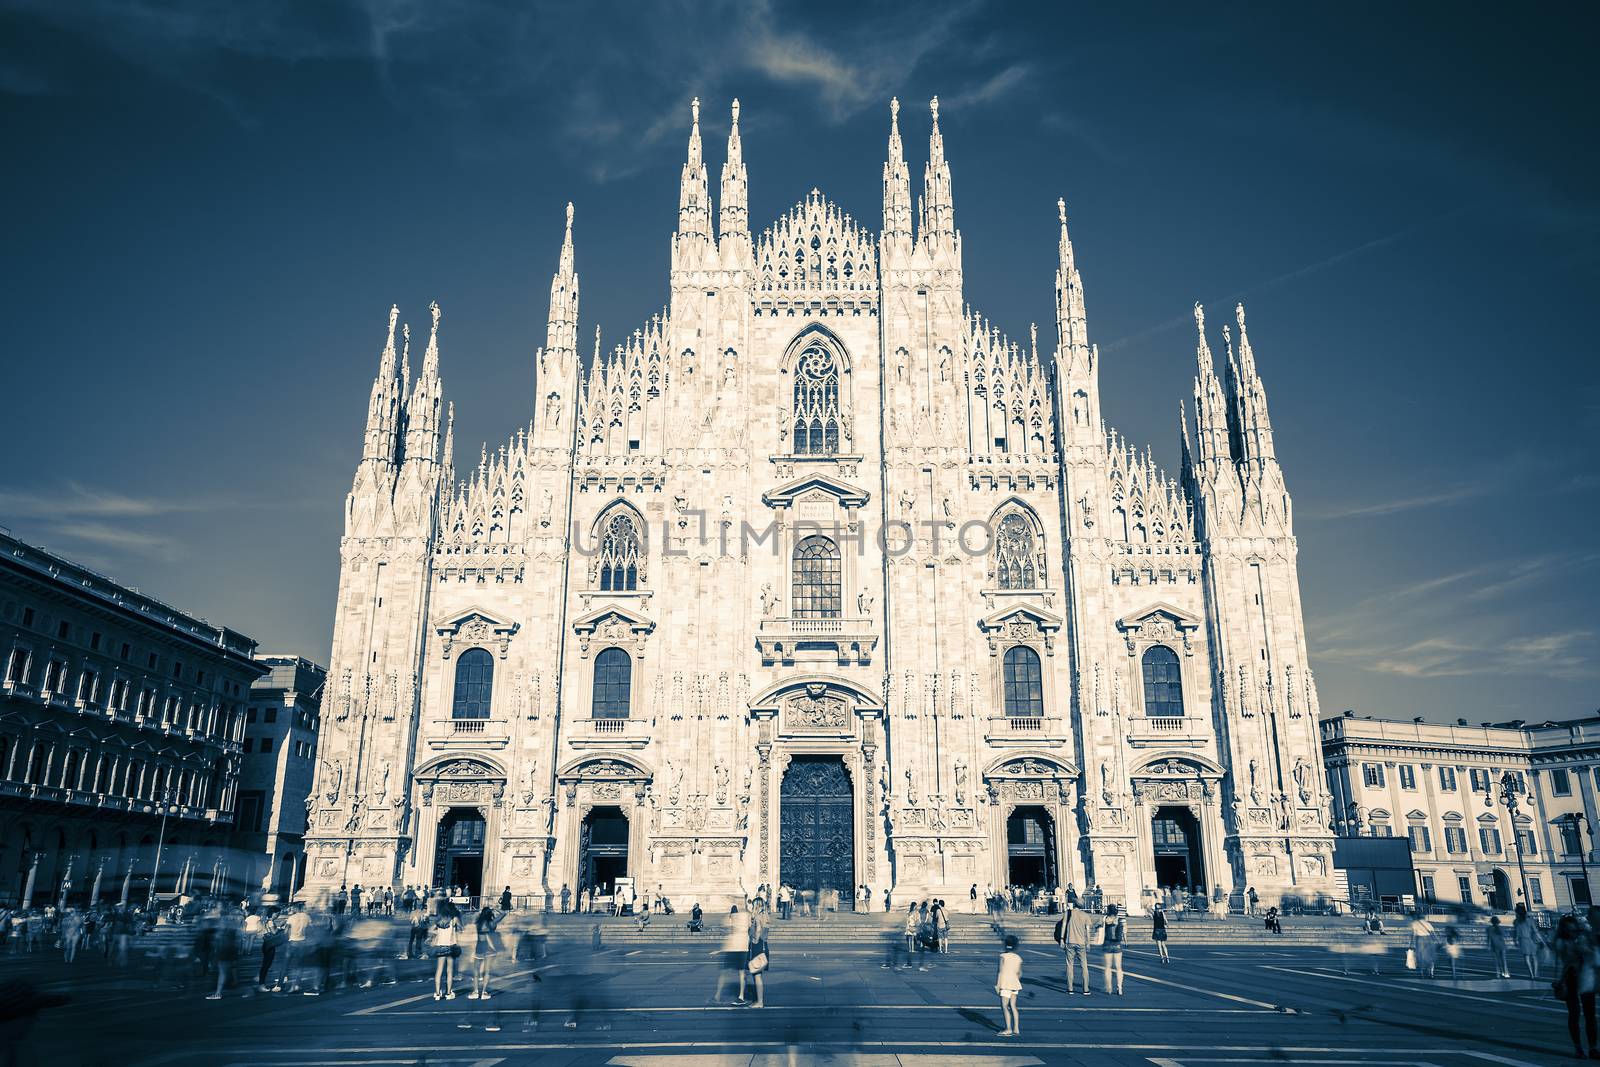 Duomo spirit by vwalakte